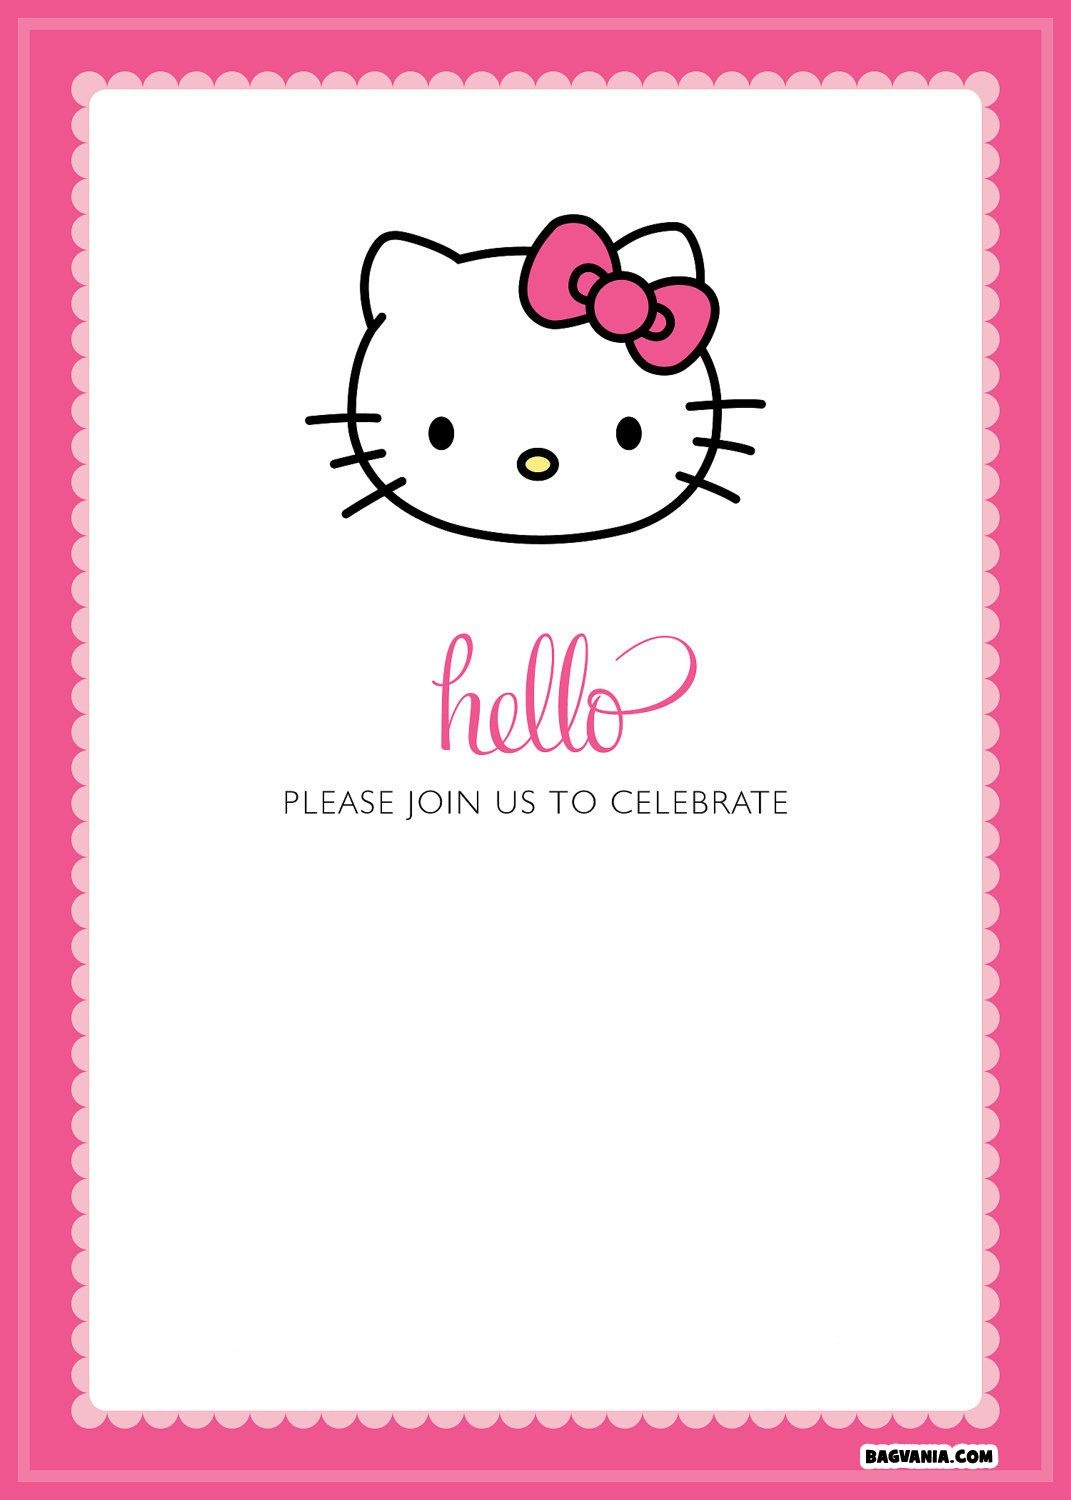 Free Printable Hello Kitty Birthday Invitations – Bagvania Free - Hello Kitty Free Printable Invitations For Birthday